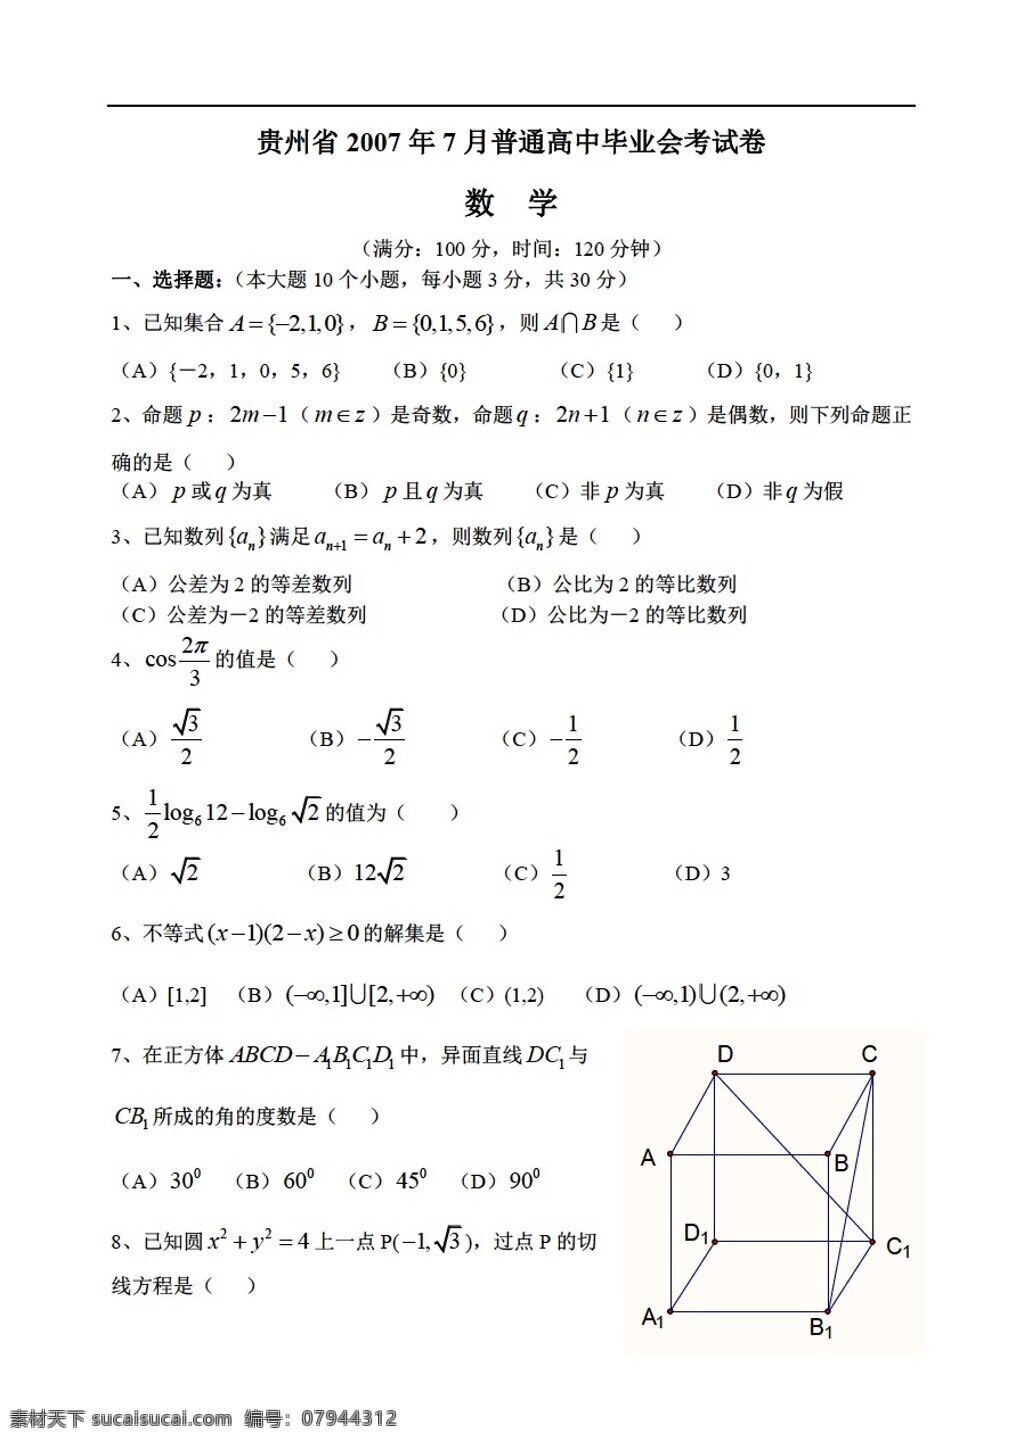 数学 会考 专区 贵州省 月 毕业 试题 会考专区 会考真题 试卷